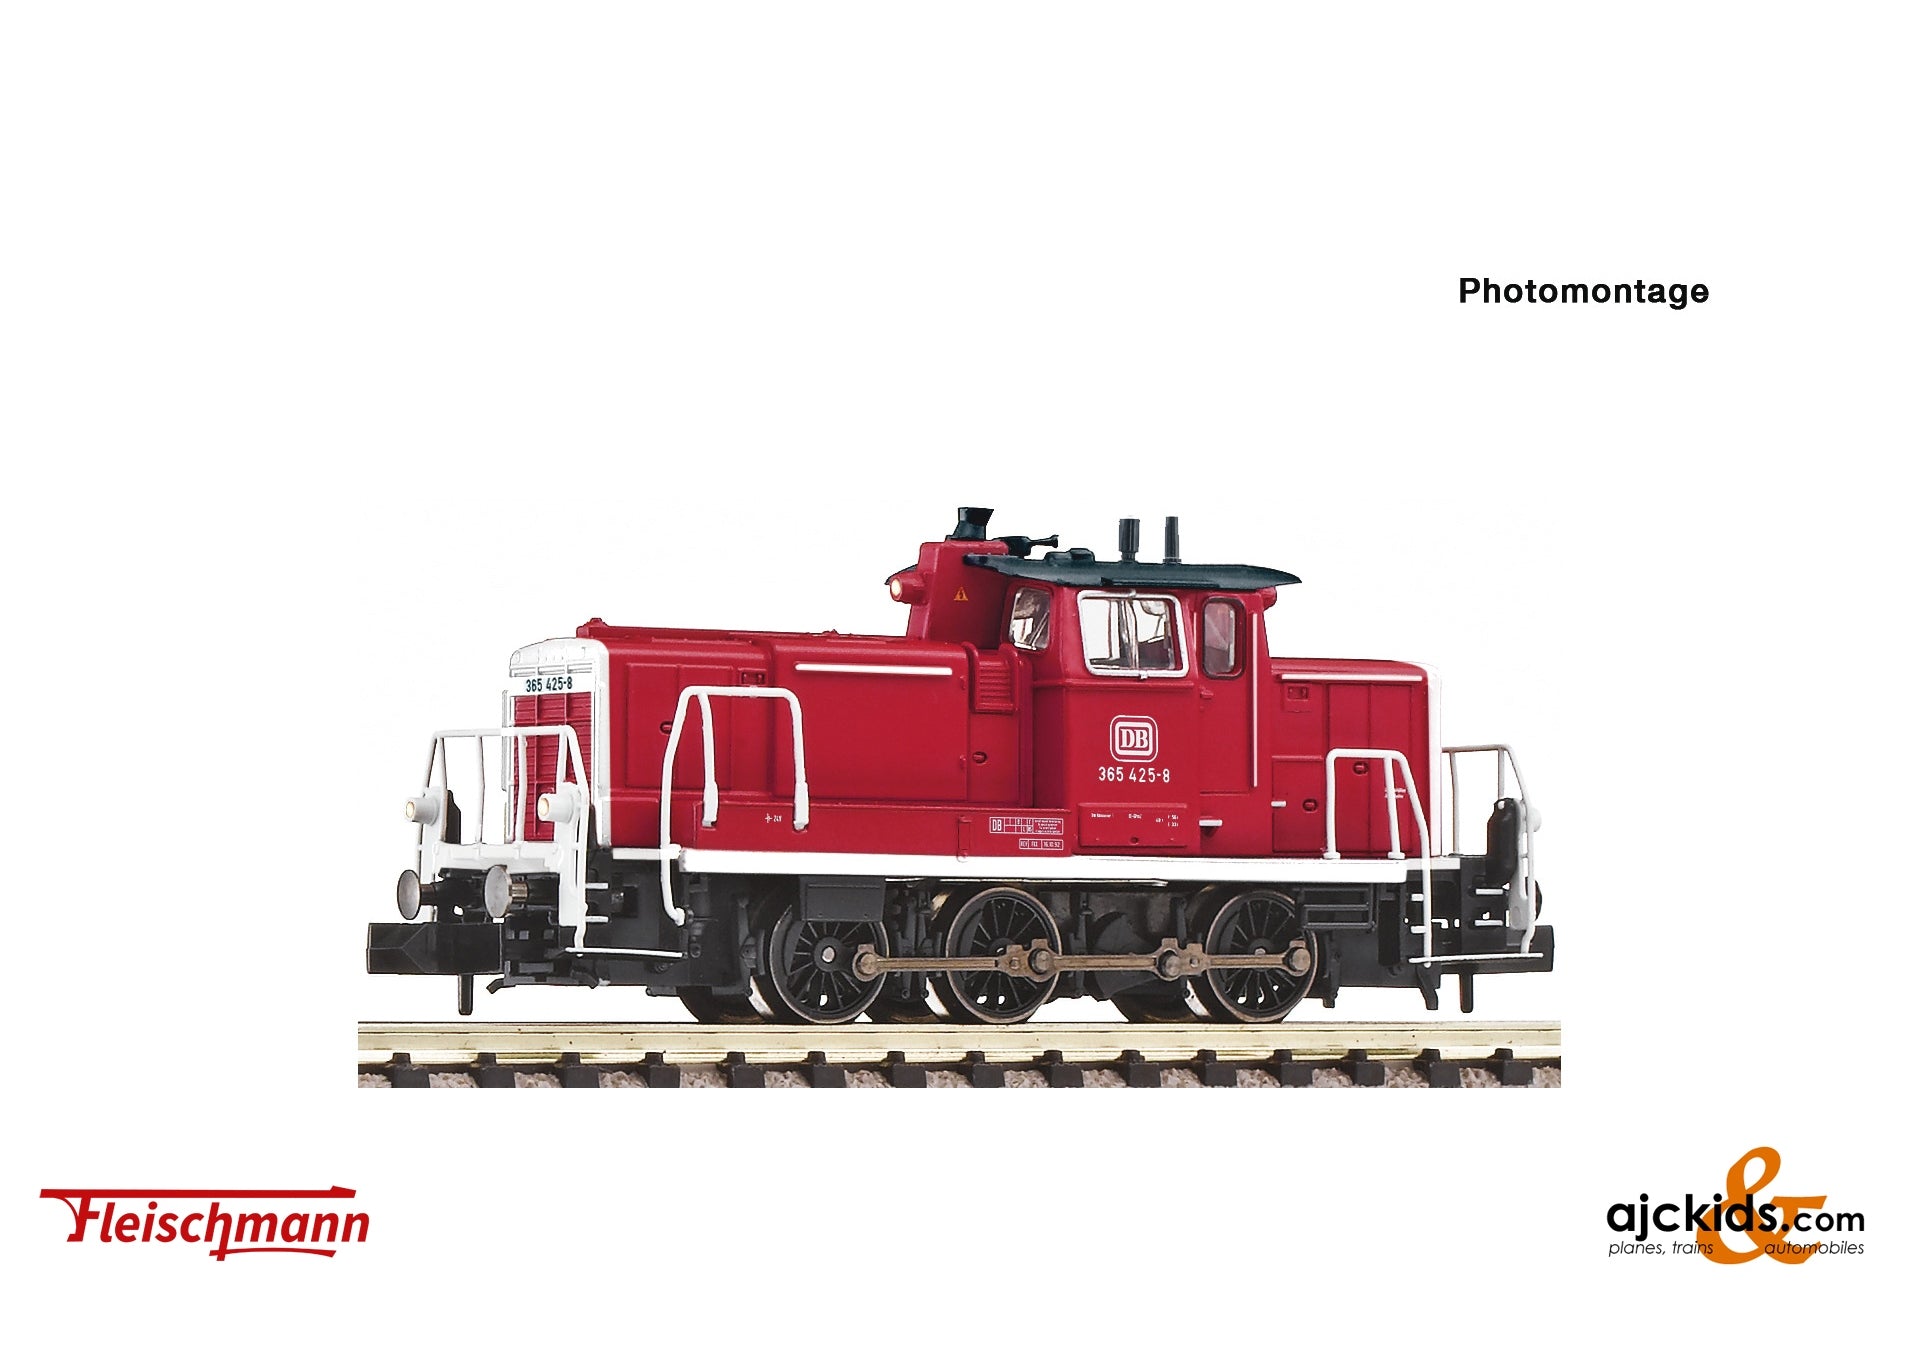 Fleischmann 7360003 - Diesel locomotive 365 425-8, DB at Ajckids.com